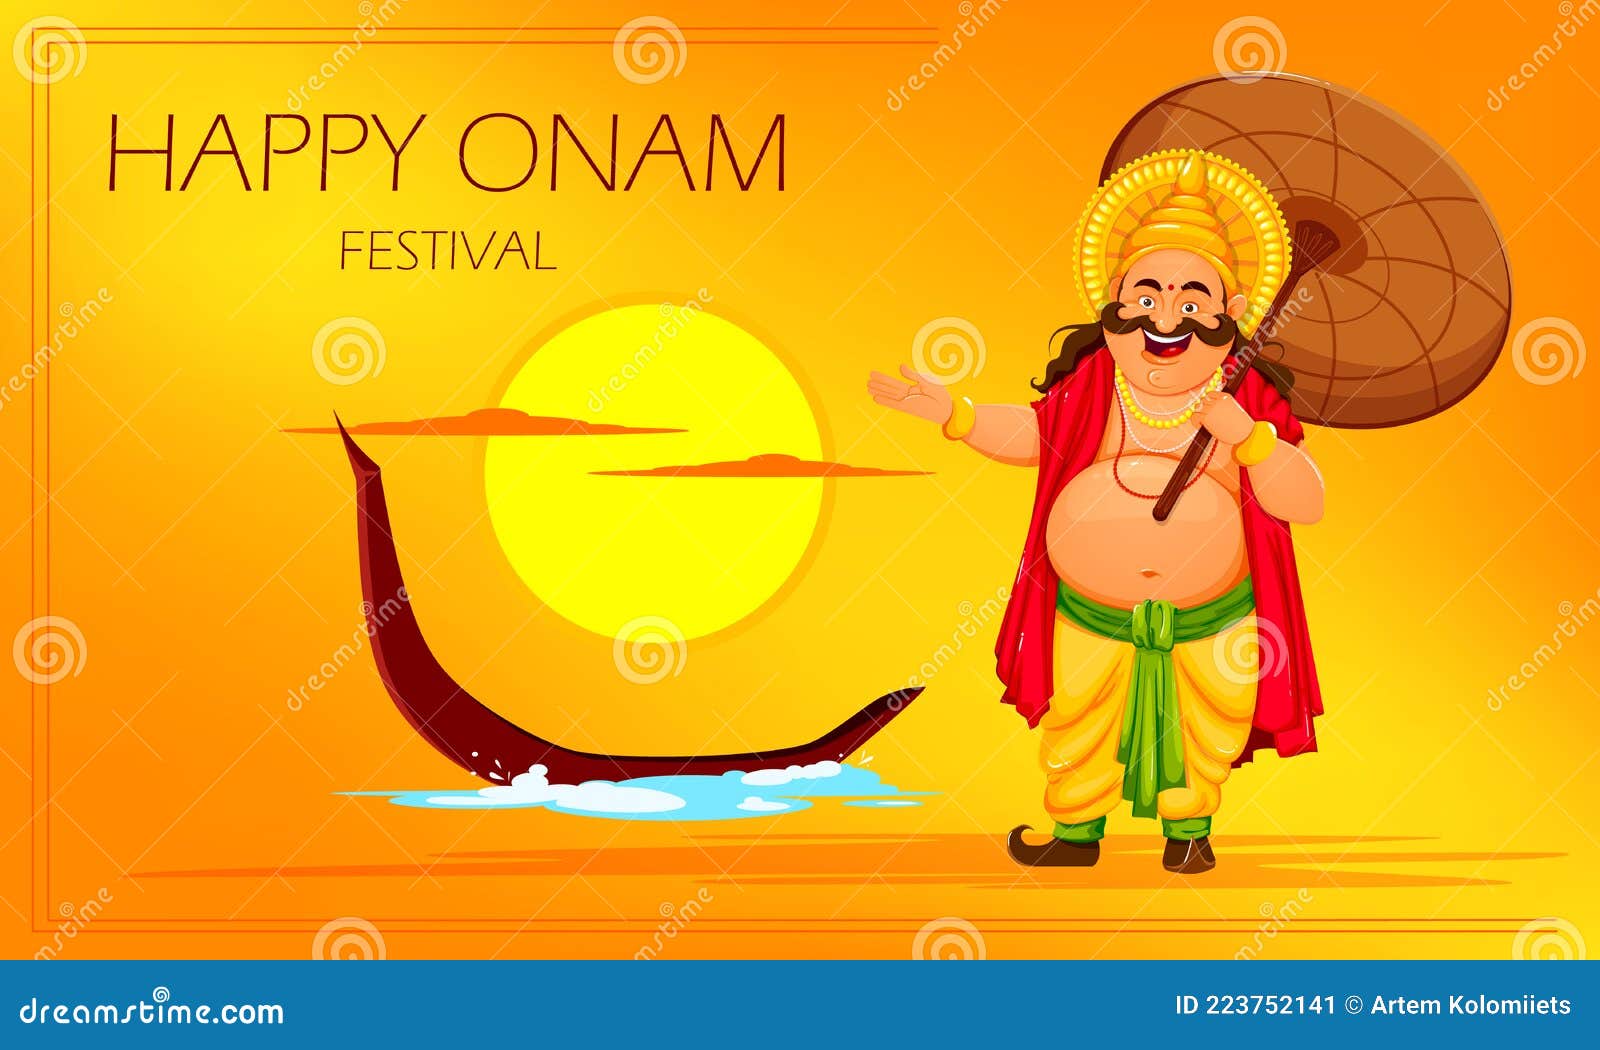 Onam, Onam Festival, Kerala, Happy Onam, Happy, Design, Malayalam ...